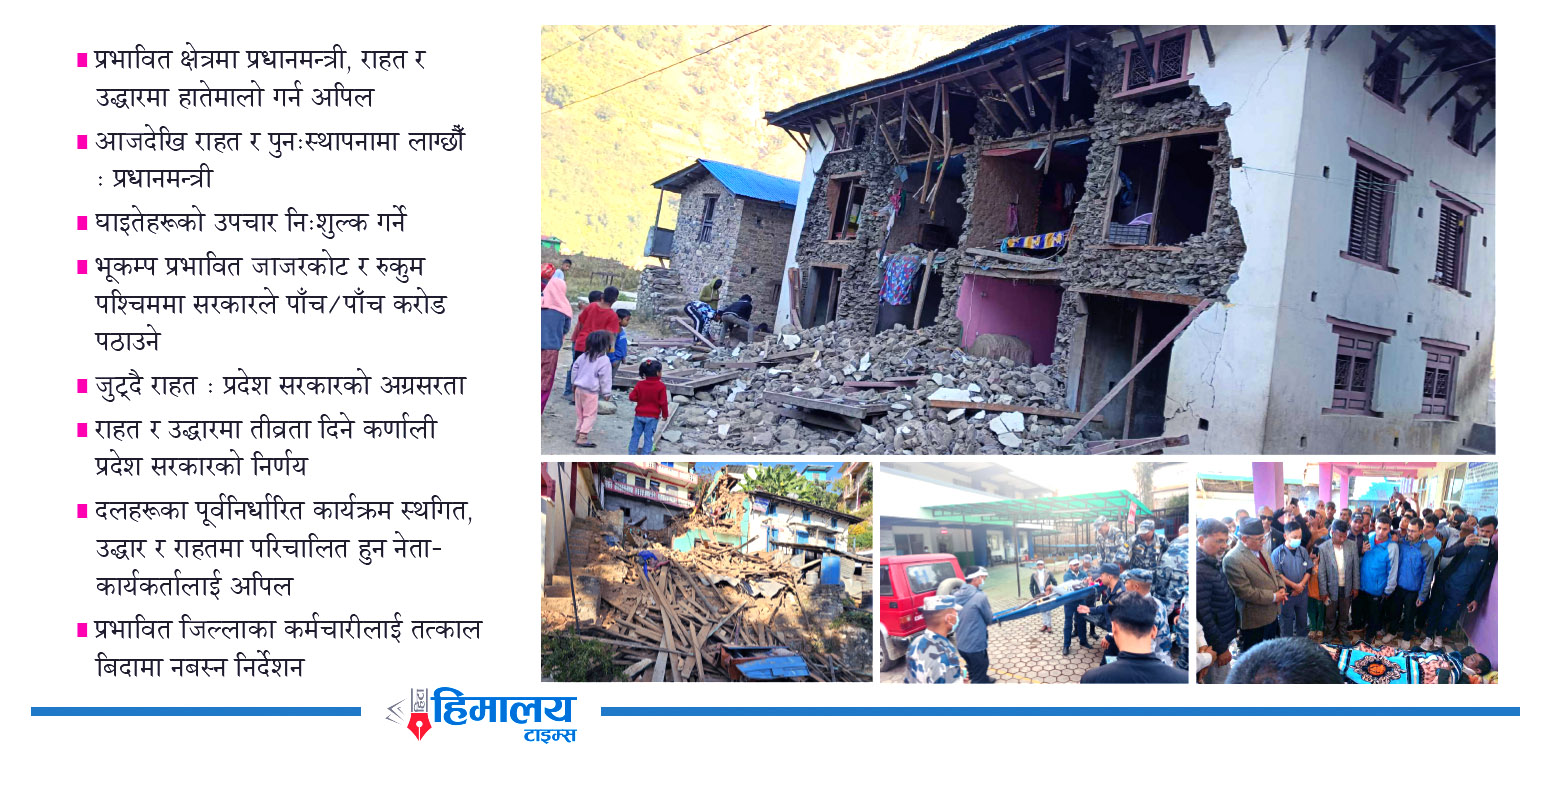 भूकम्पले जाजरकोट र रुकुम (पश्चिम) भताभुंग, हजारौँ घर भत्किँदा पीडितलाई खानबस्नकै समस्या